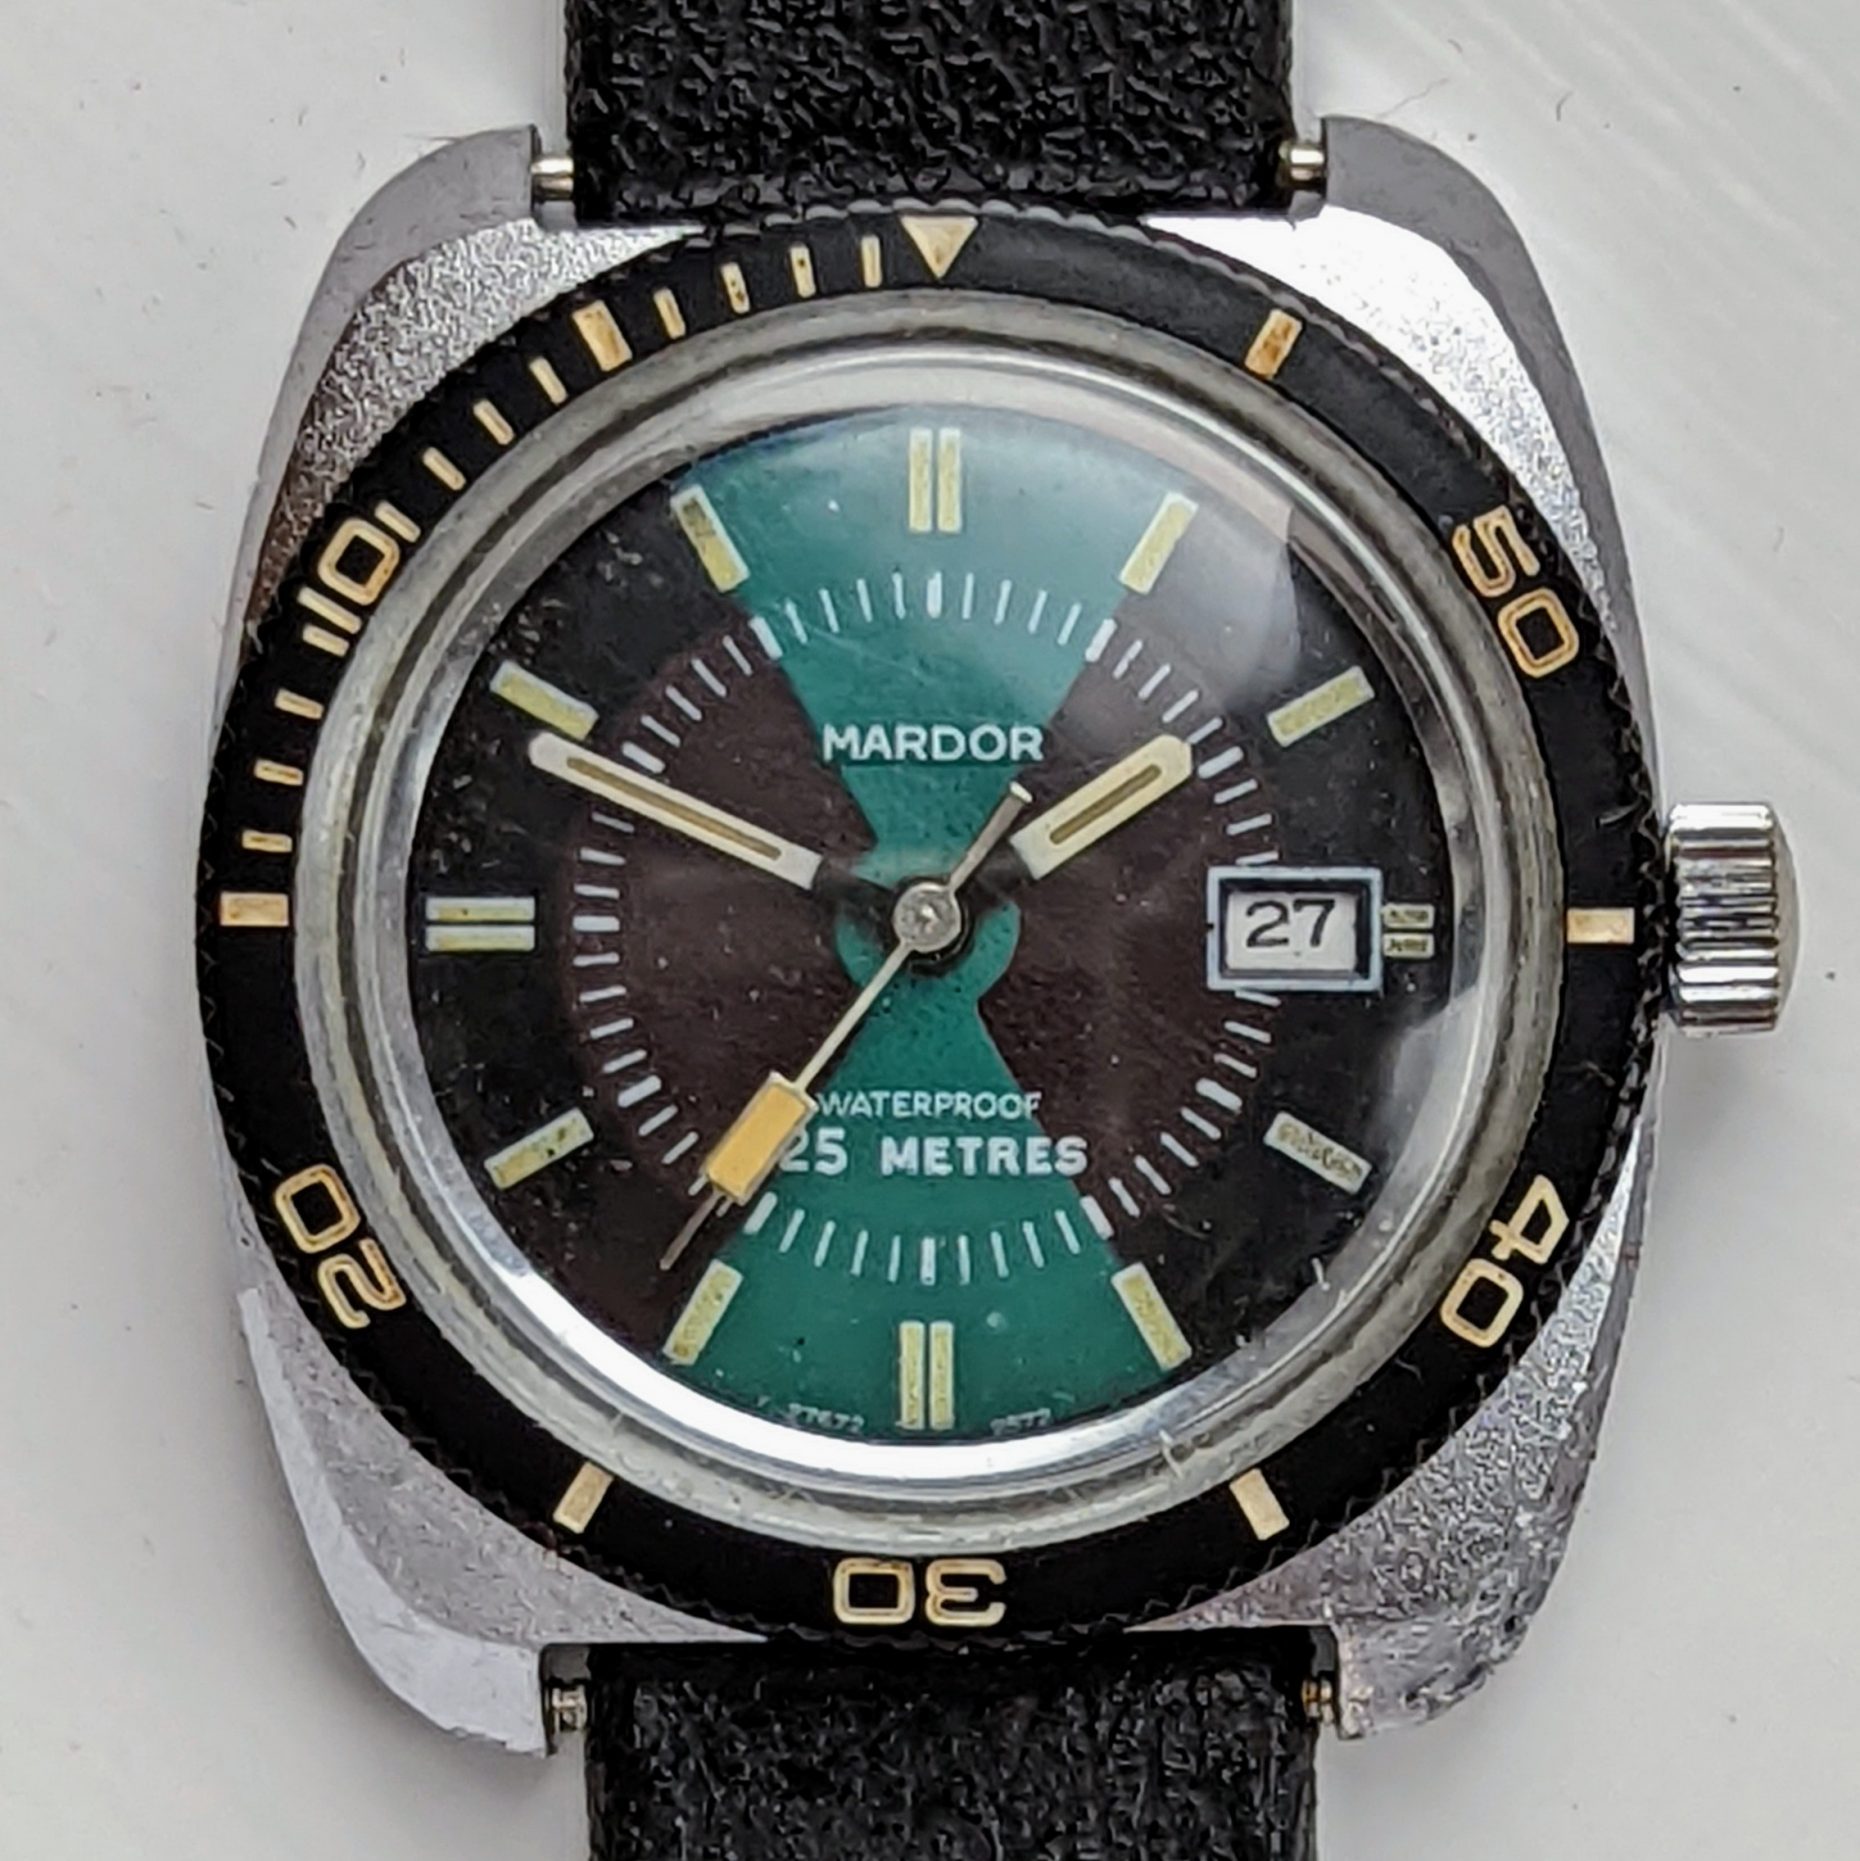 Mardor Marlin Calendar Dive Watch 1972 Ref. 27672 2572